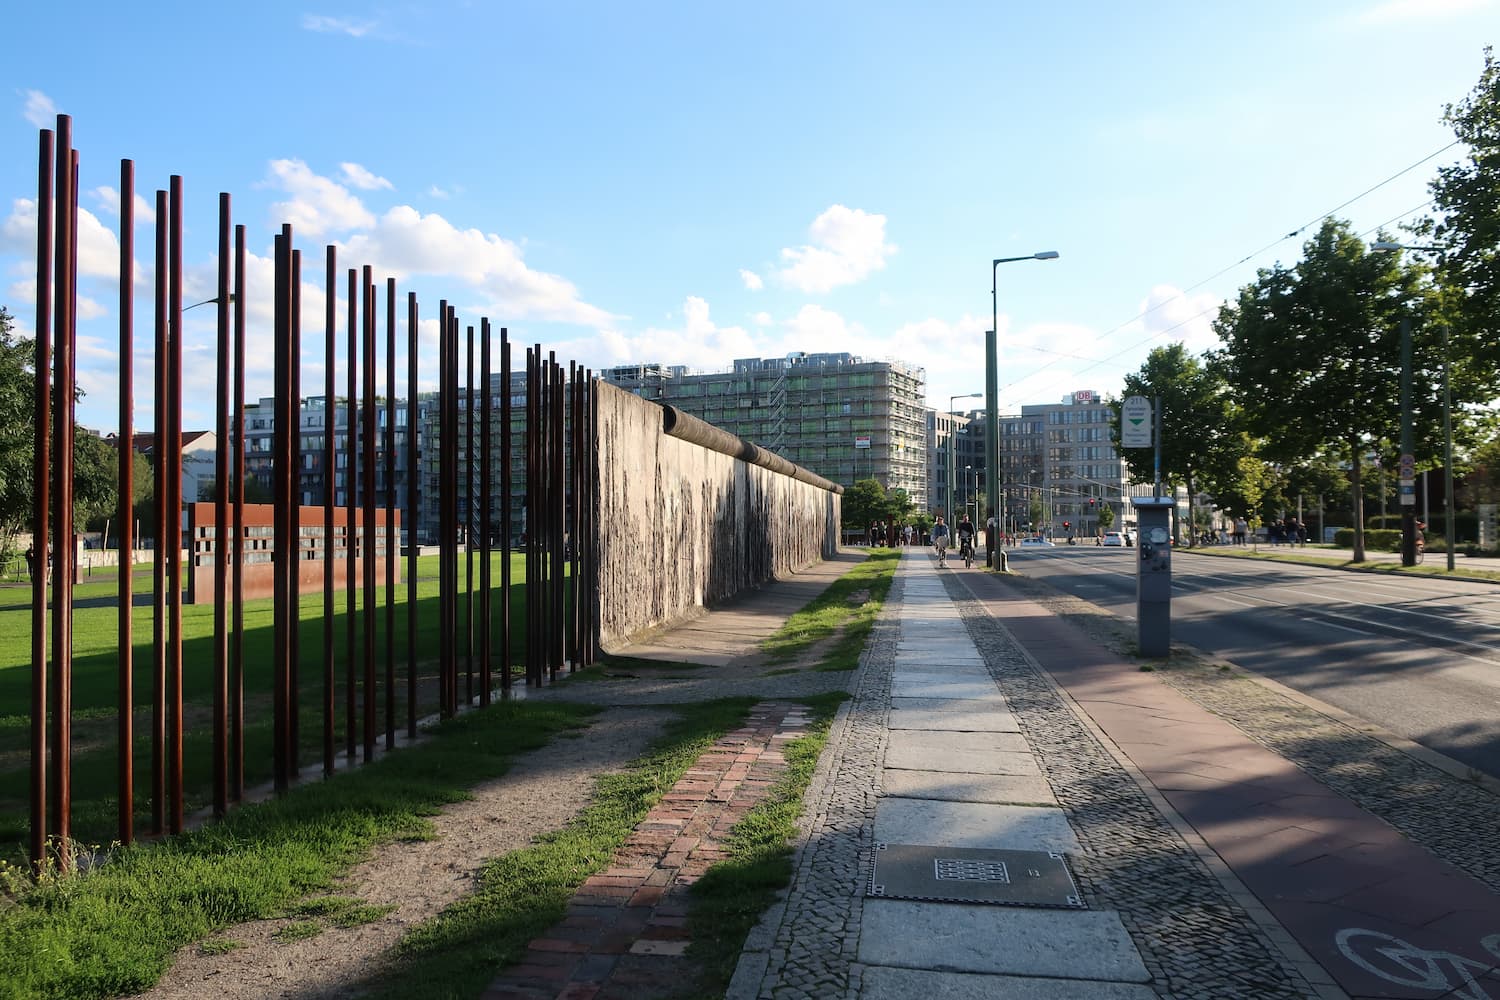 ベルリンの壁の構造を理解できる場所「ベルリンの壁博物館」